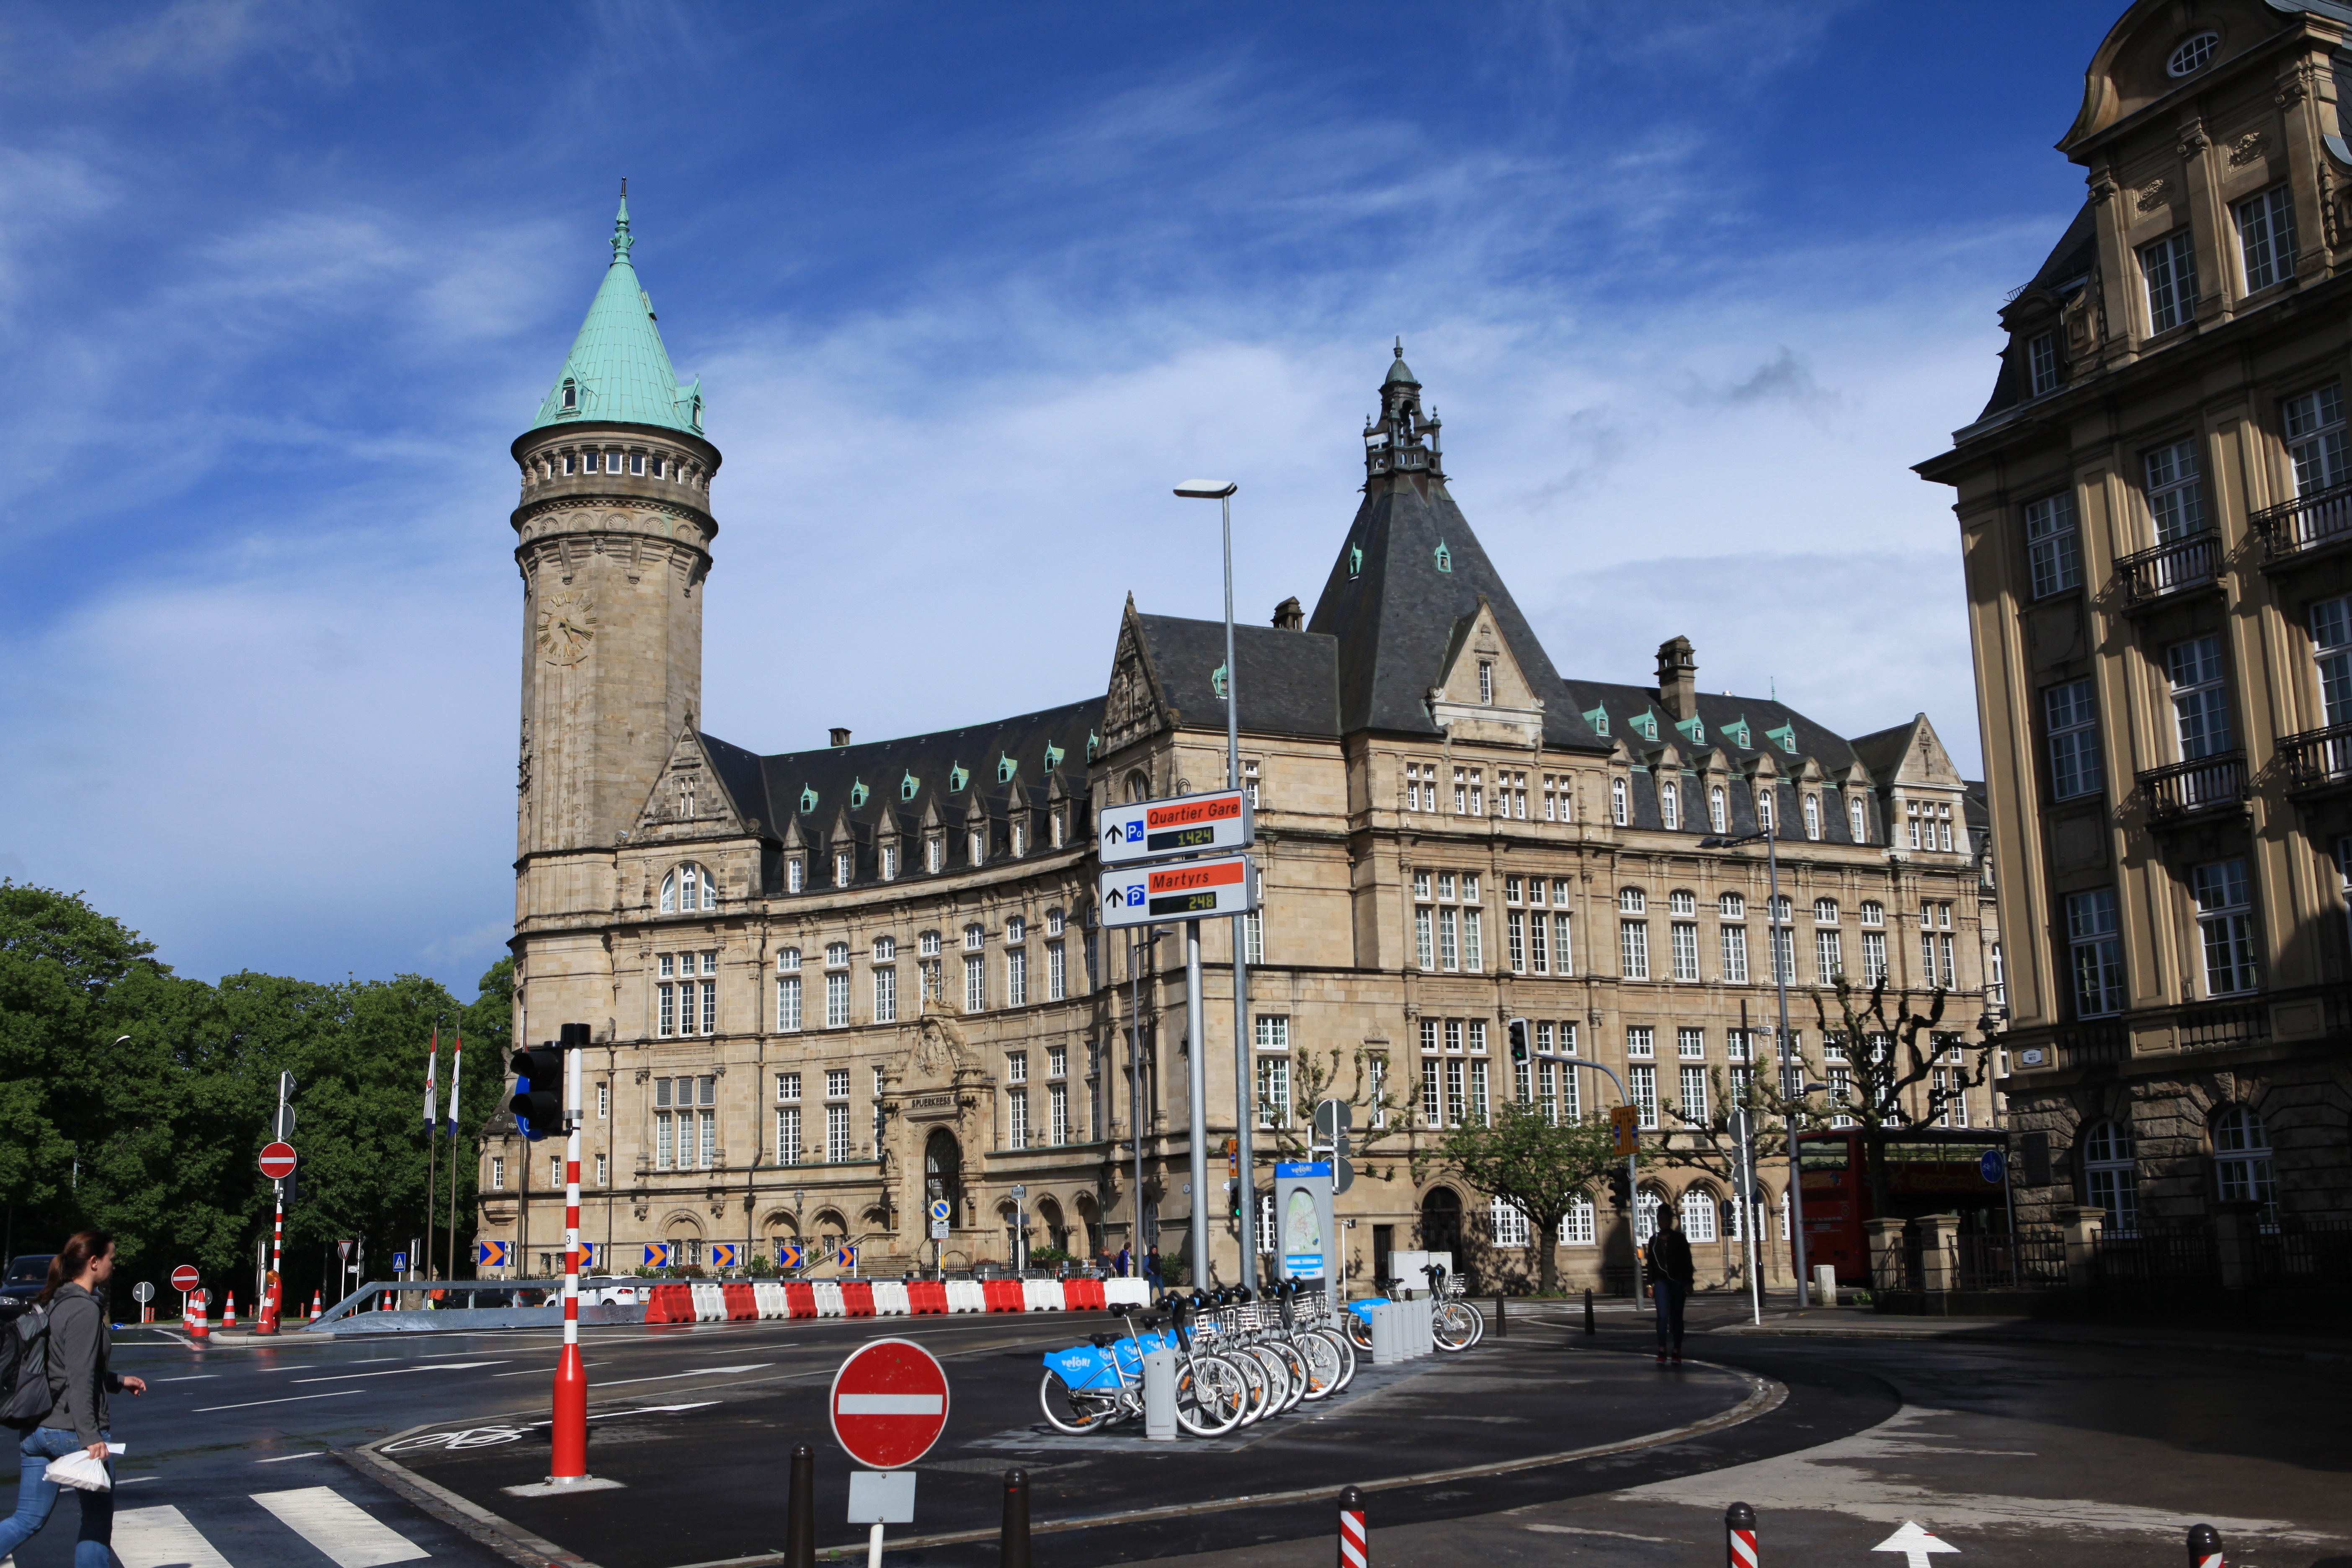 卢森堡大公国,简称卢森堡,位于欧洲西北部,被邻国法